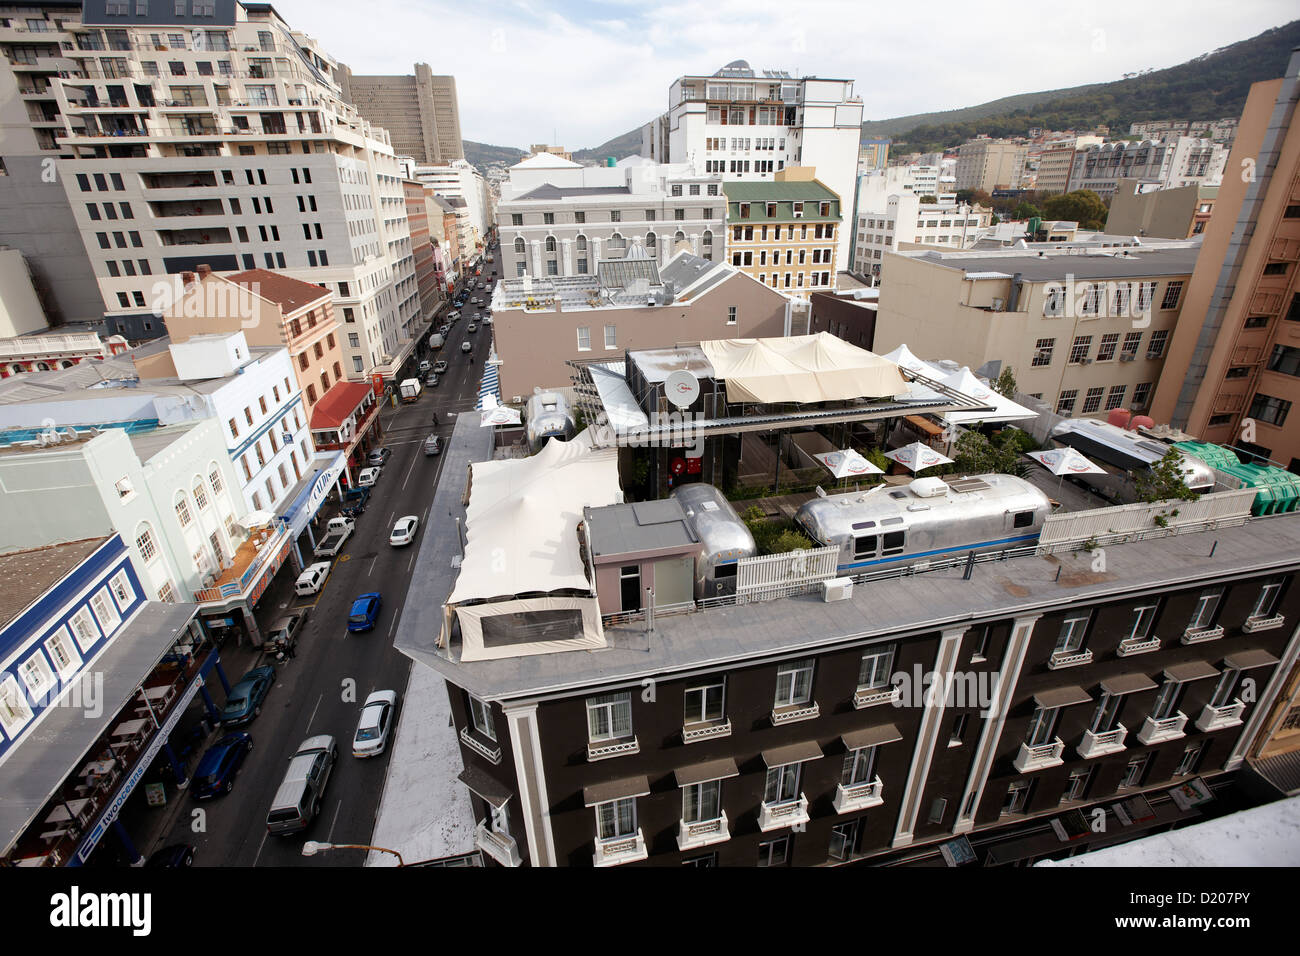 Vue sur toit-terrasse de l'hôtel Grand daddy avec trailer park, centre-ville, Le Cap, Afrique du Sud, l'Afrique Banque D'Images